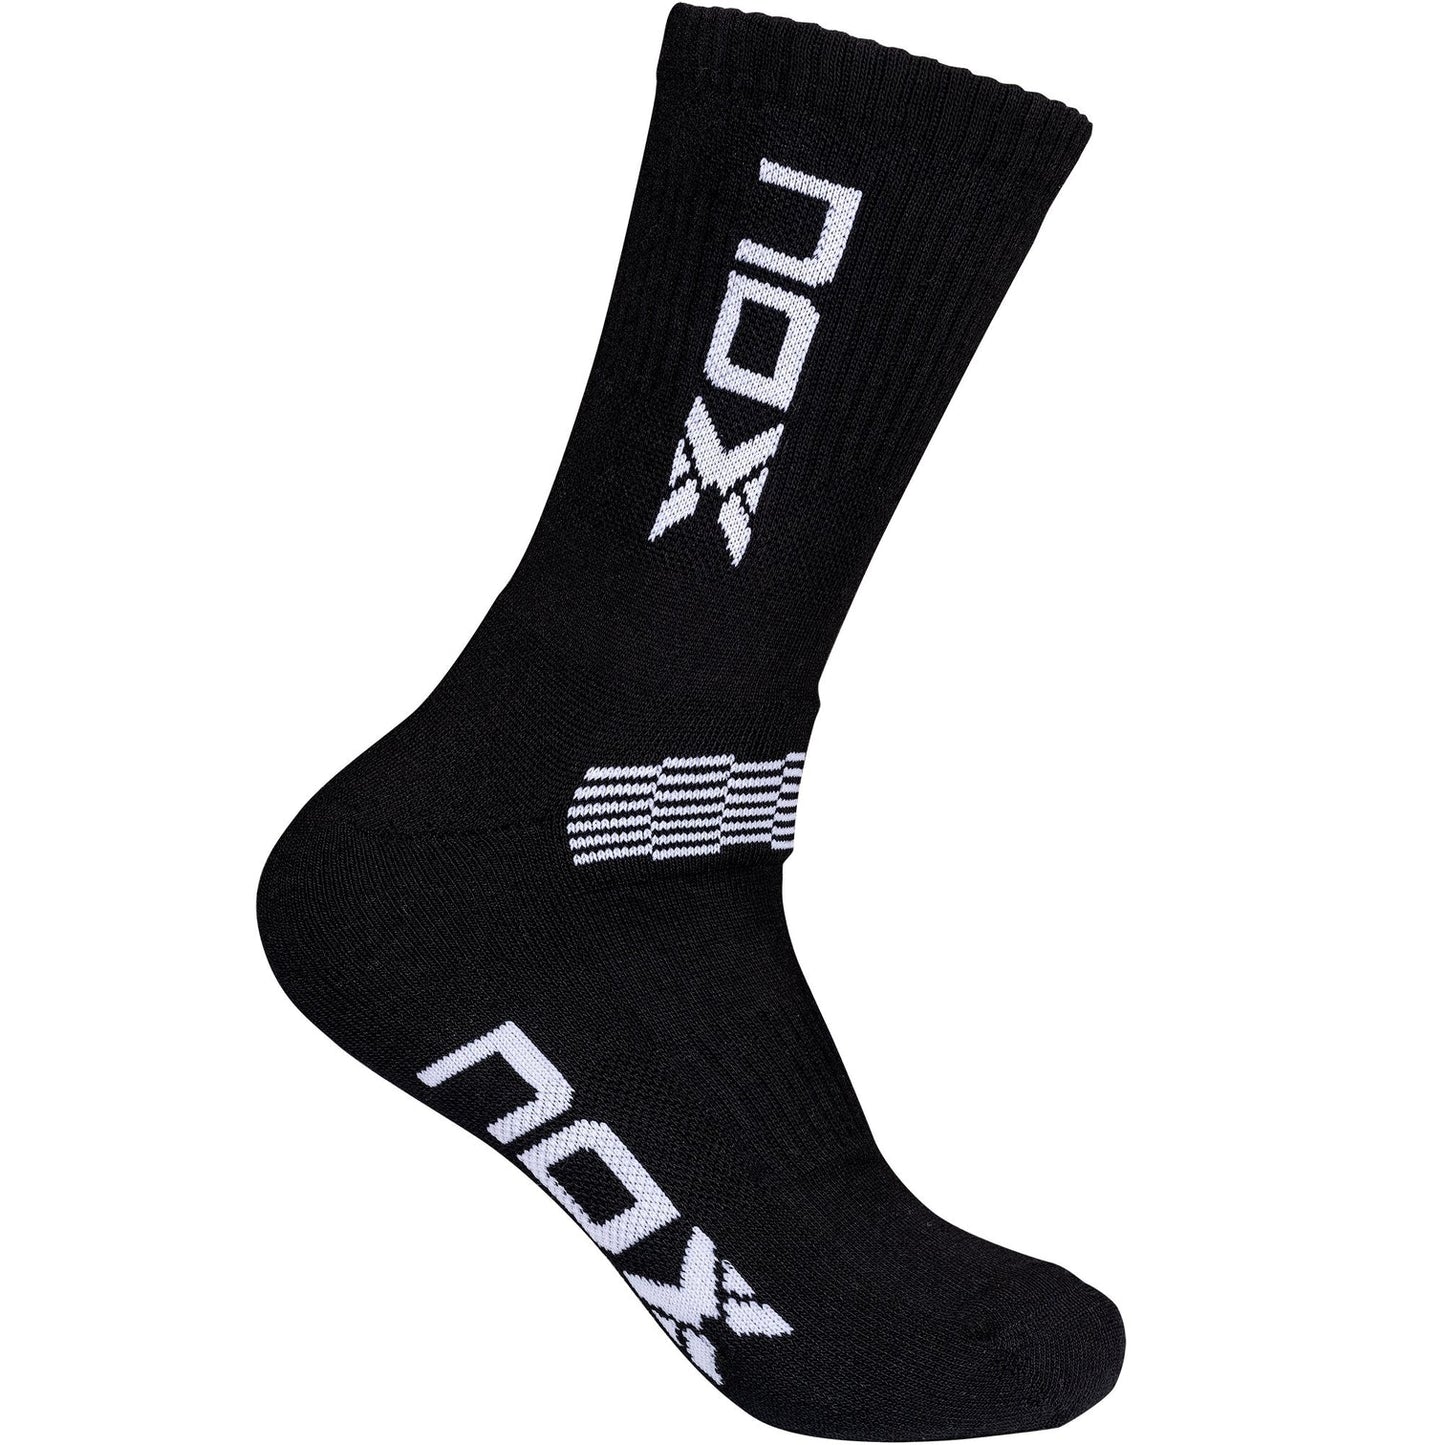 Pack of CREW performance socks black/white